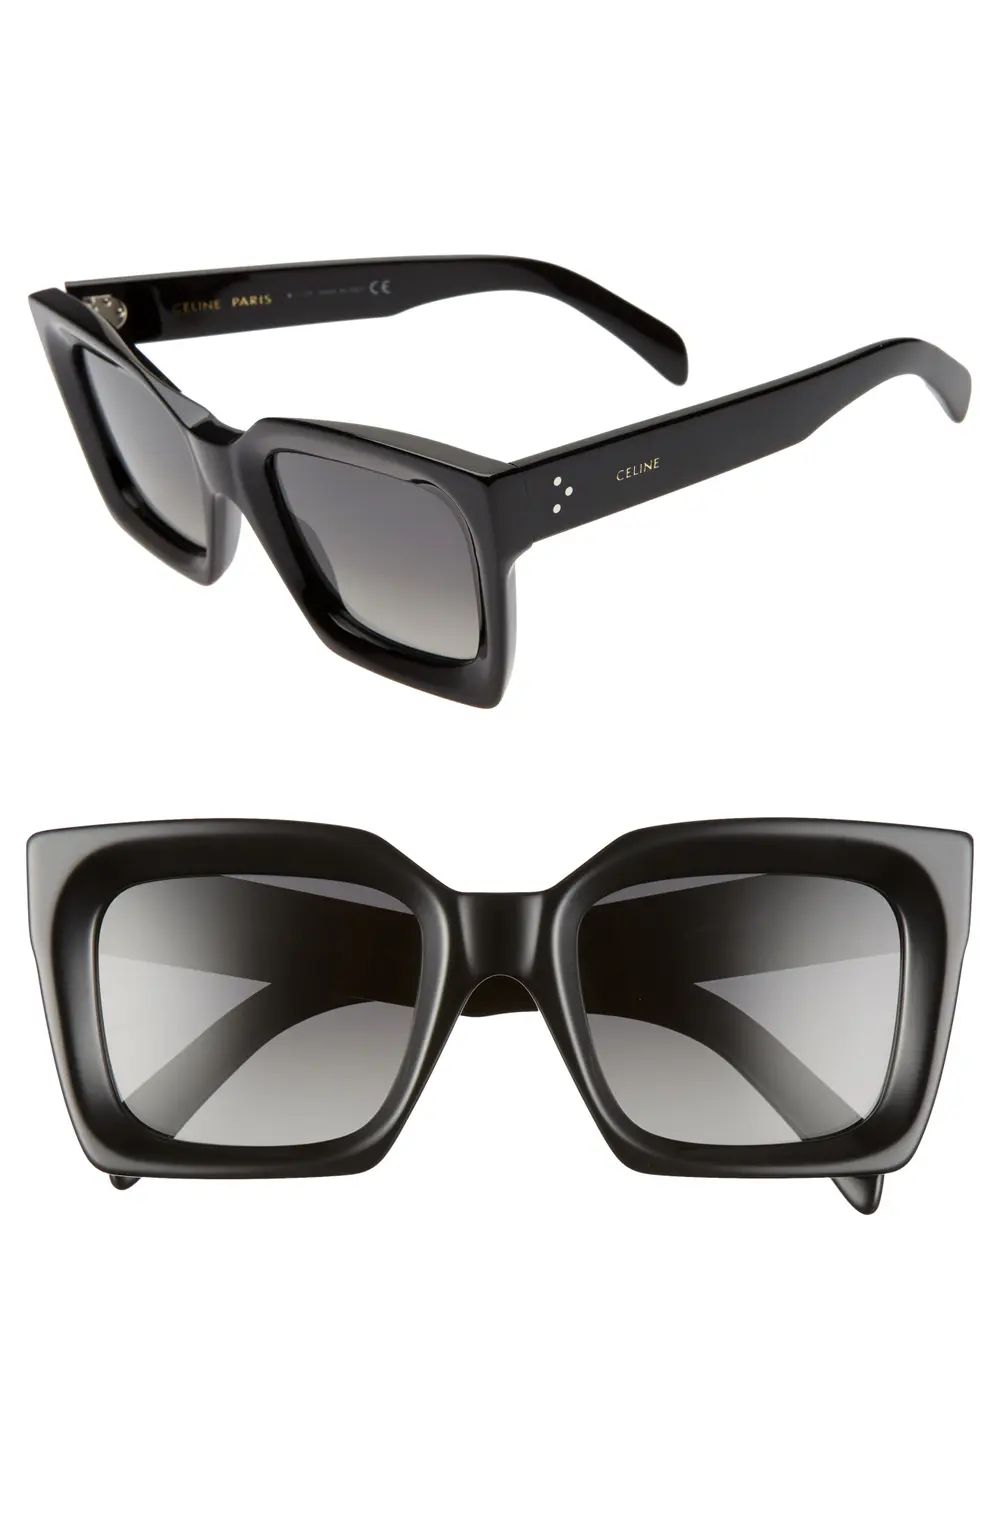 CELINE 51mm Polarized Square Sunglasses in Black/Smoke at Nordstrom | Nordstrom Canada